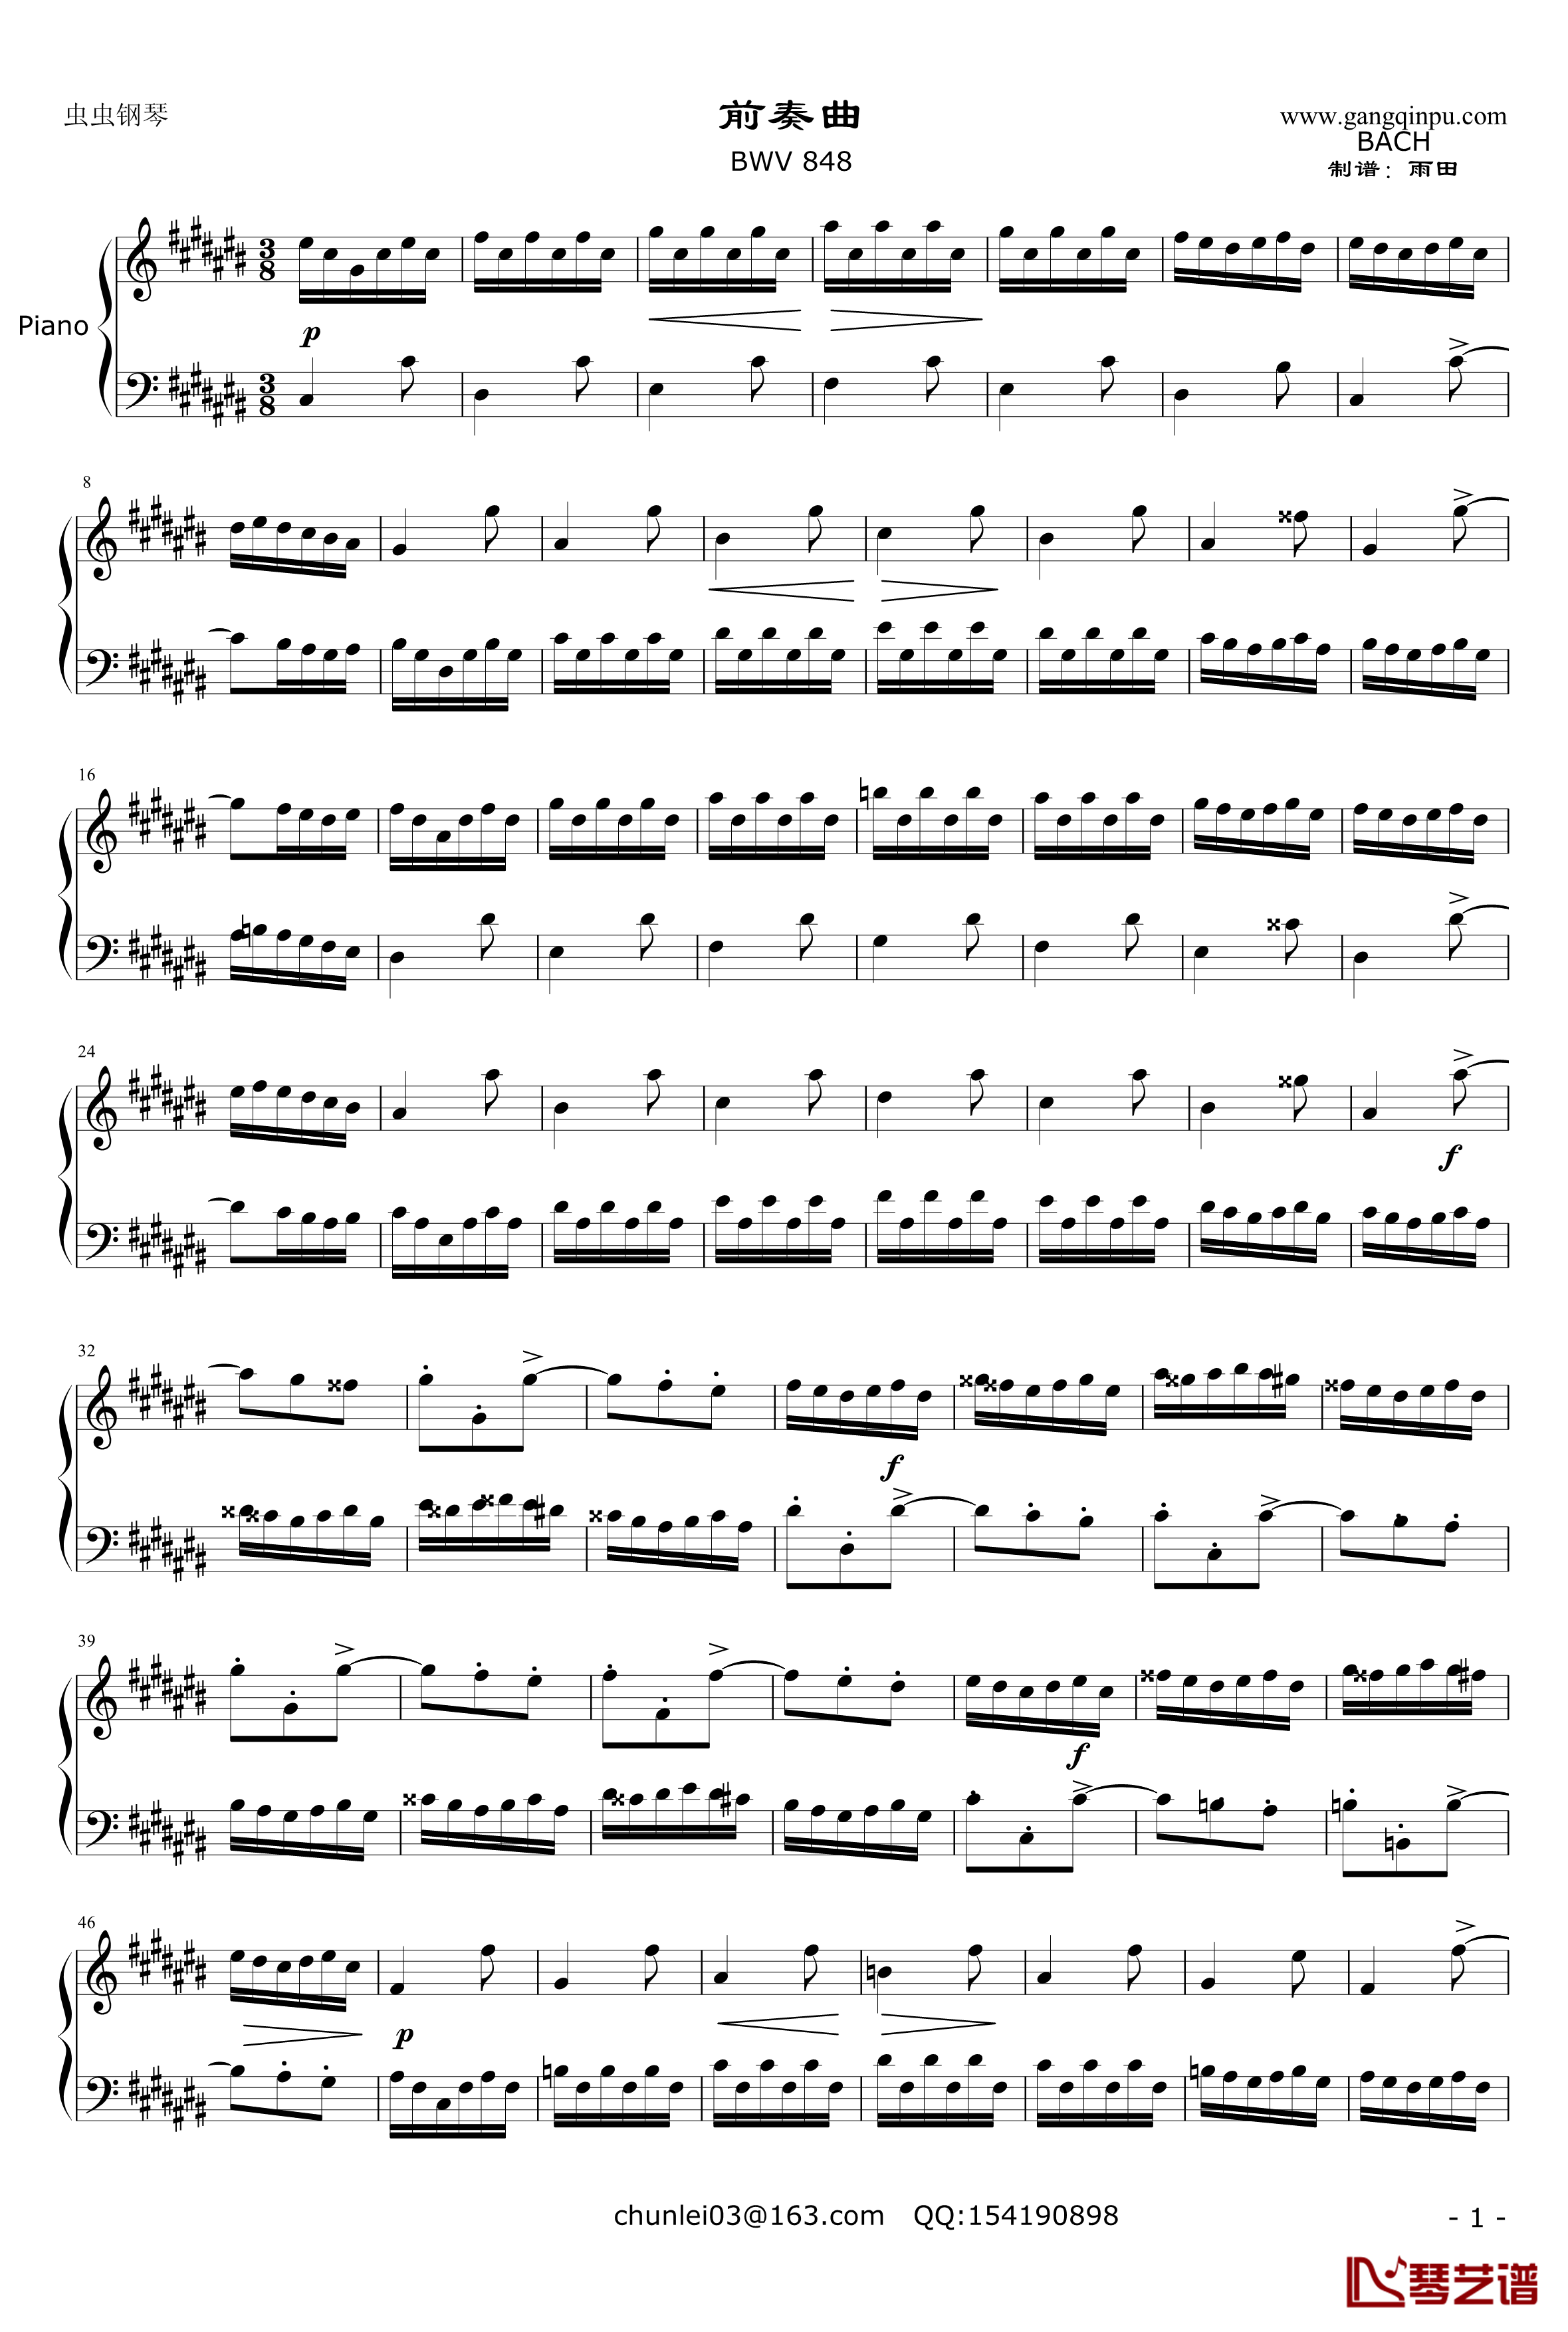 前奏曲-平均律第3首钢琴谱-奥芬巴赫-BWV848